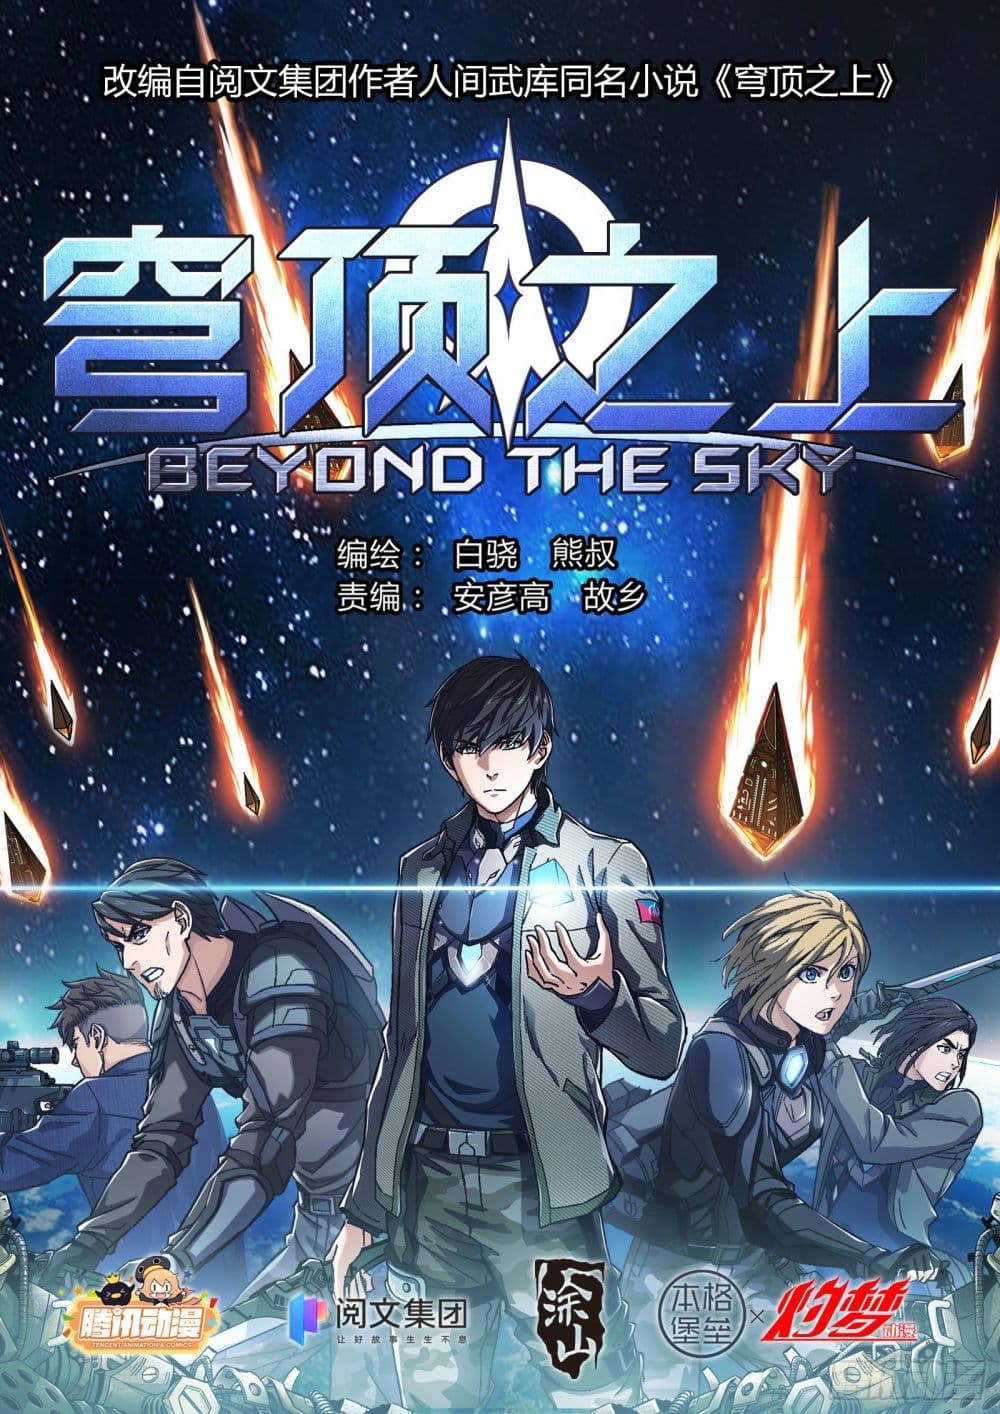 Beyond The Sky 17 (1)